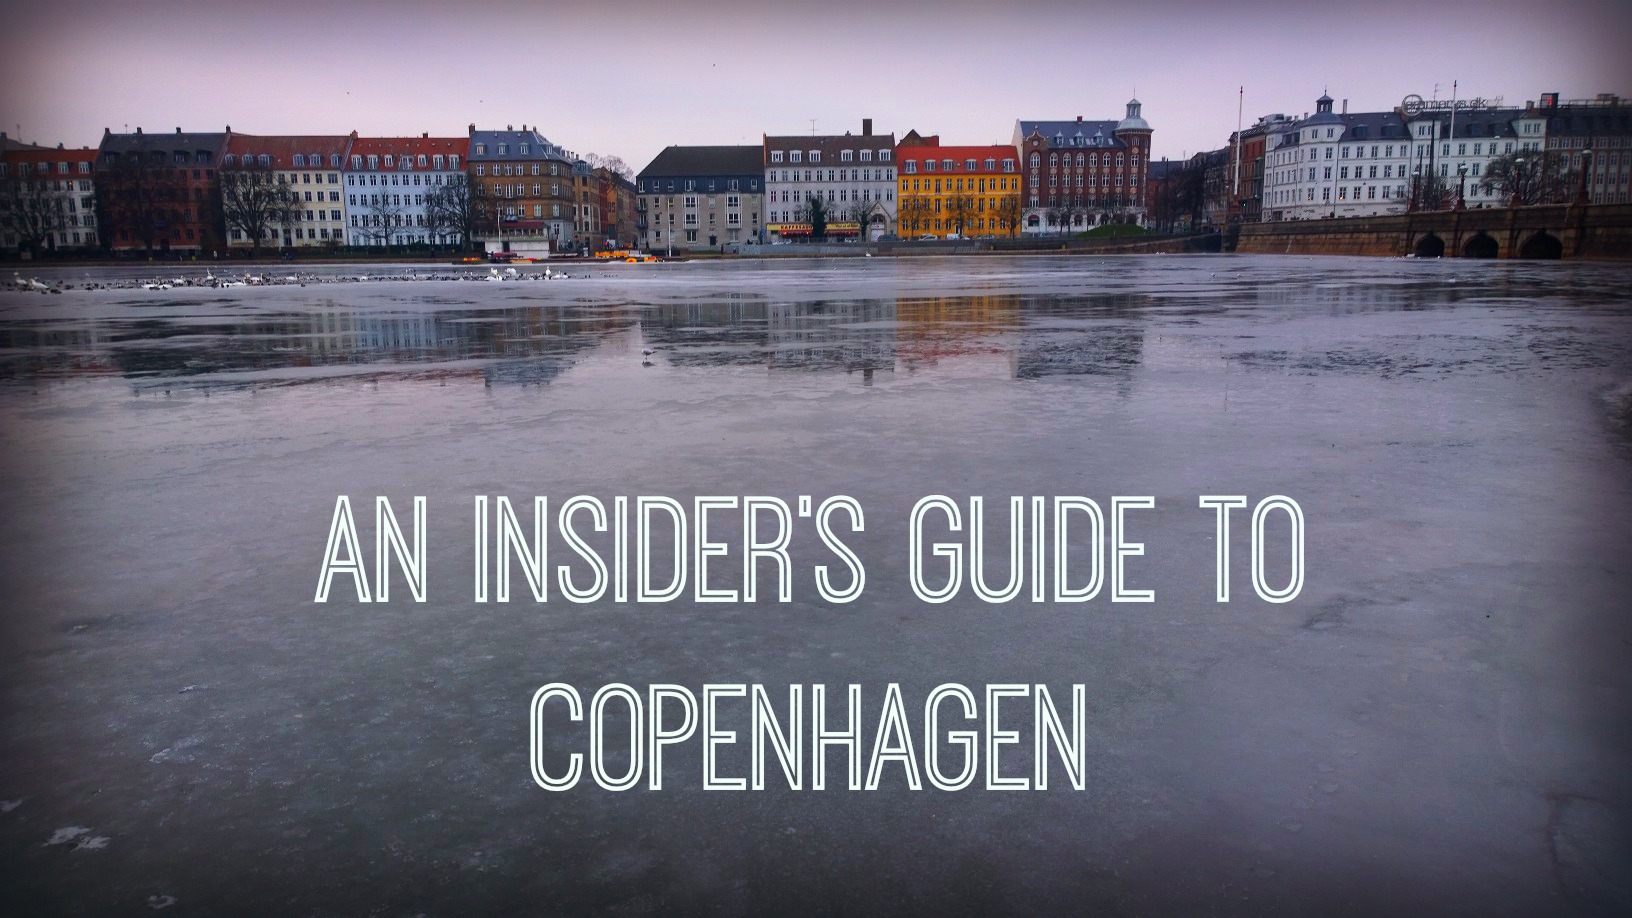 An insider’s guide to Copenhagen